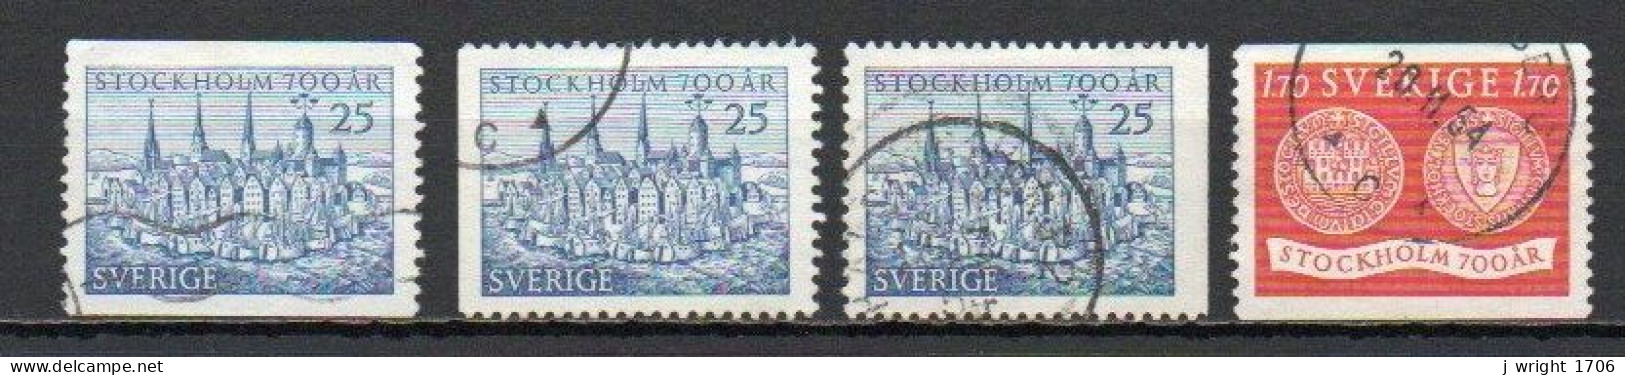 Sweden, 1953, Stockholm 700th Anniv, Set, USED - Oblitérés